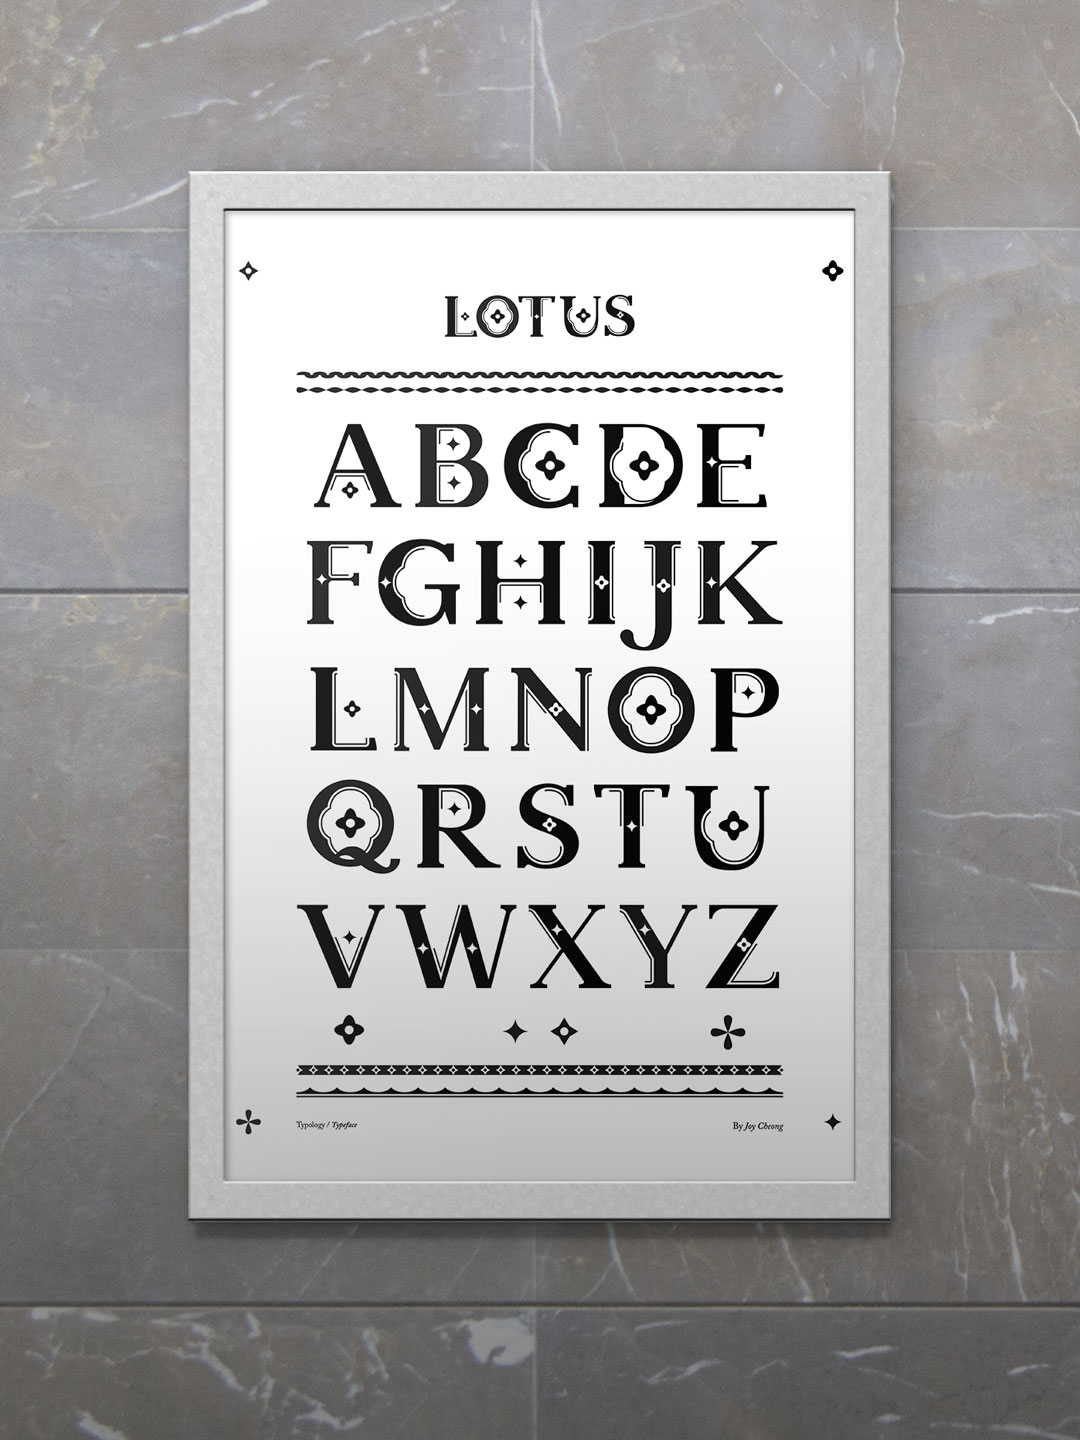 Lotus Typeface.